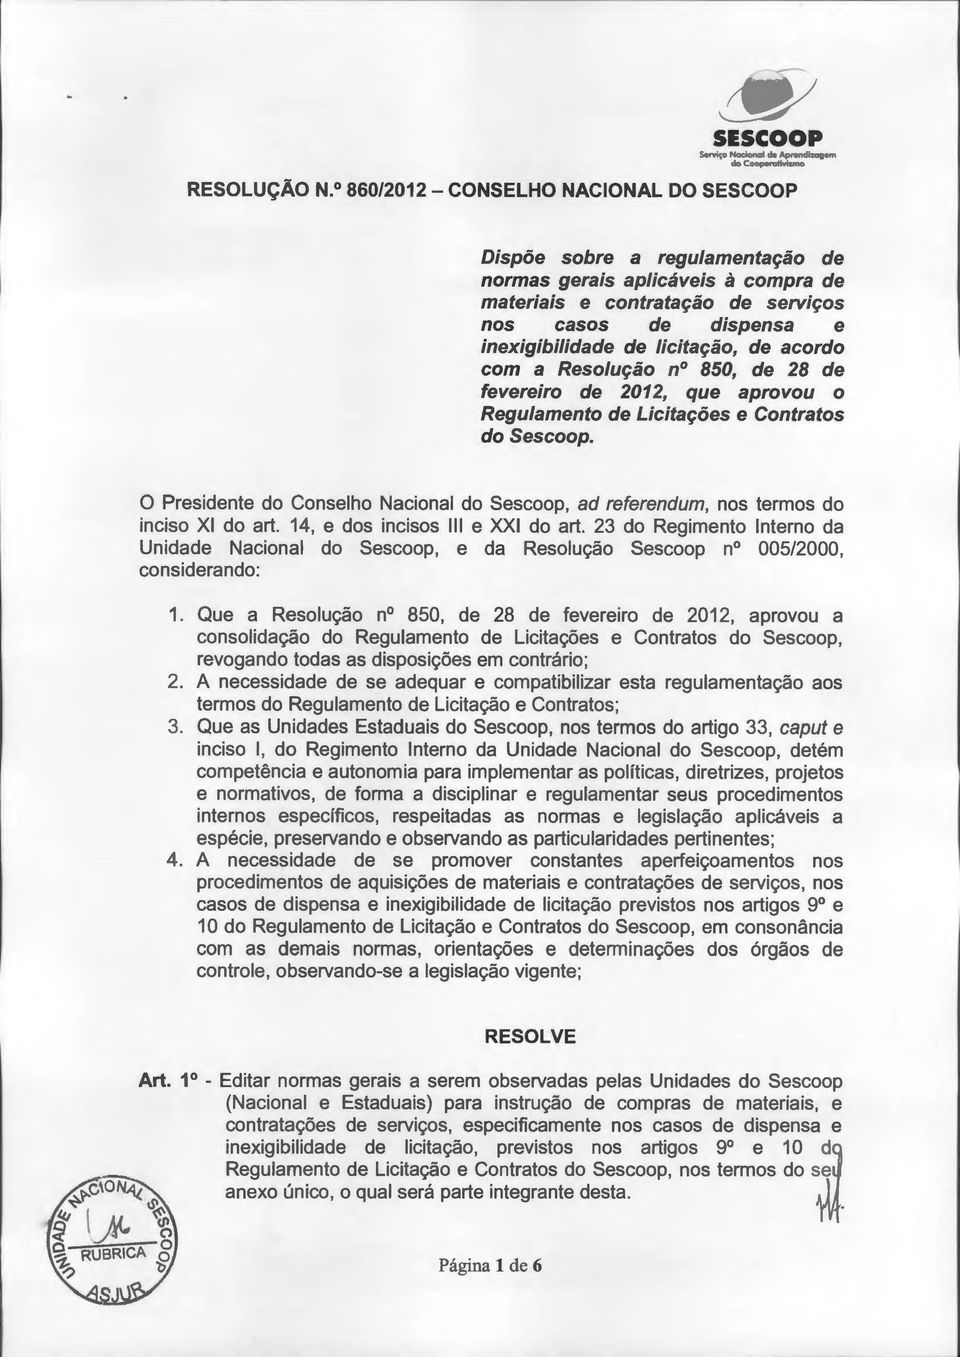 acordo com a Resolução nº 850, de 28 de fevereiro de 2012, que aprovou o Regulamento de Licitações e Contratos do Sescoop.